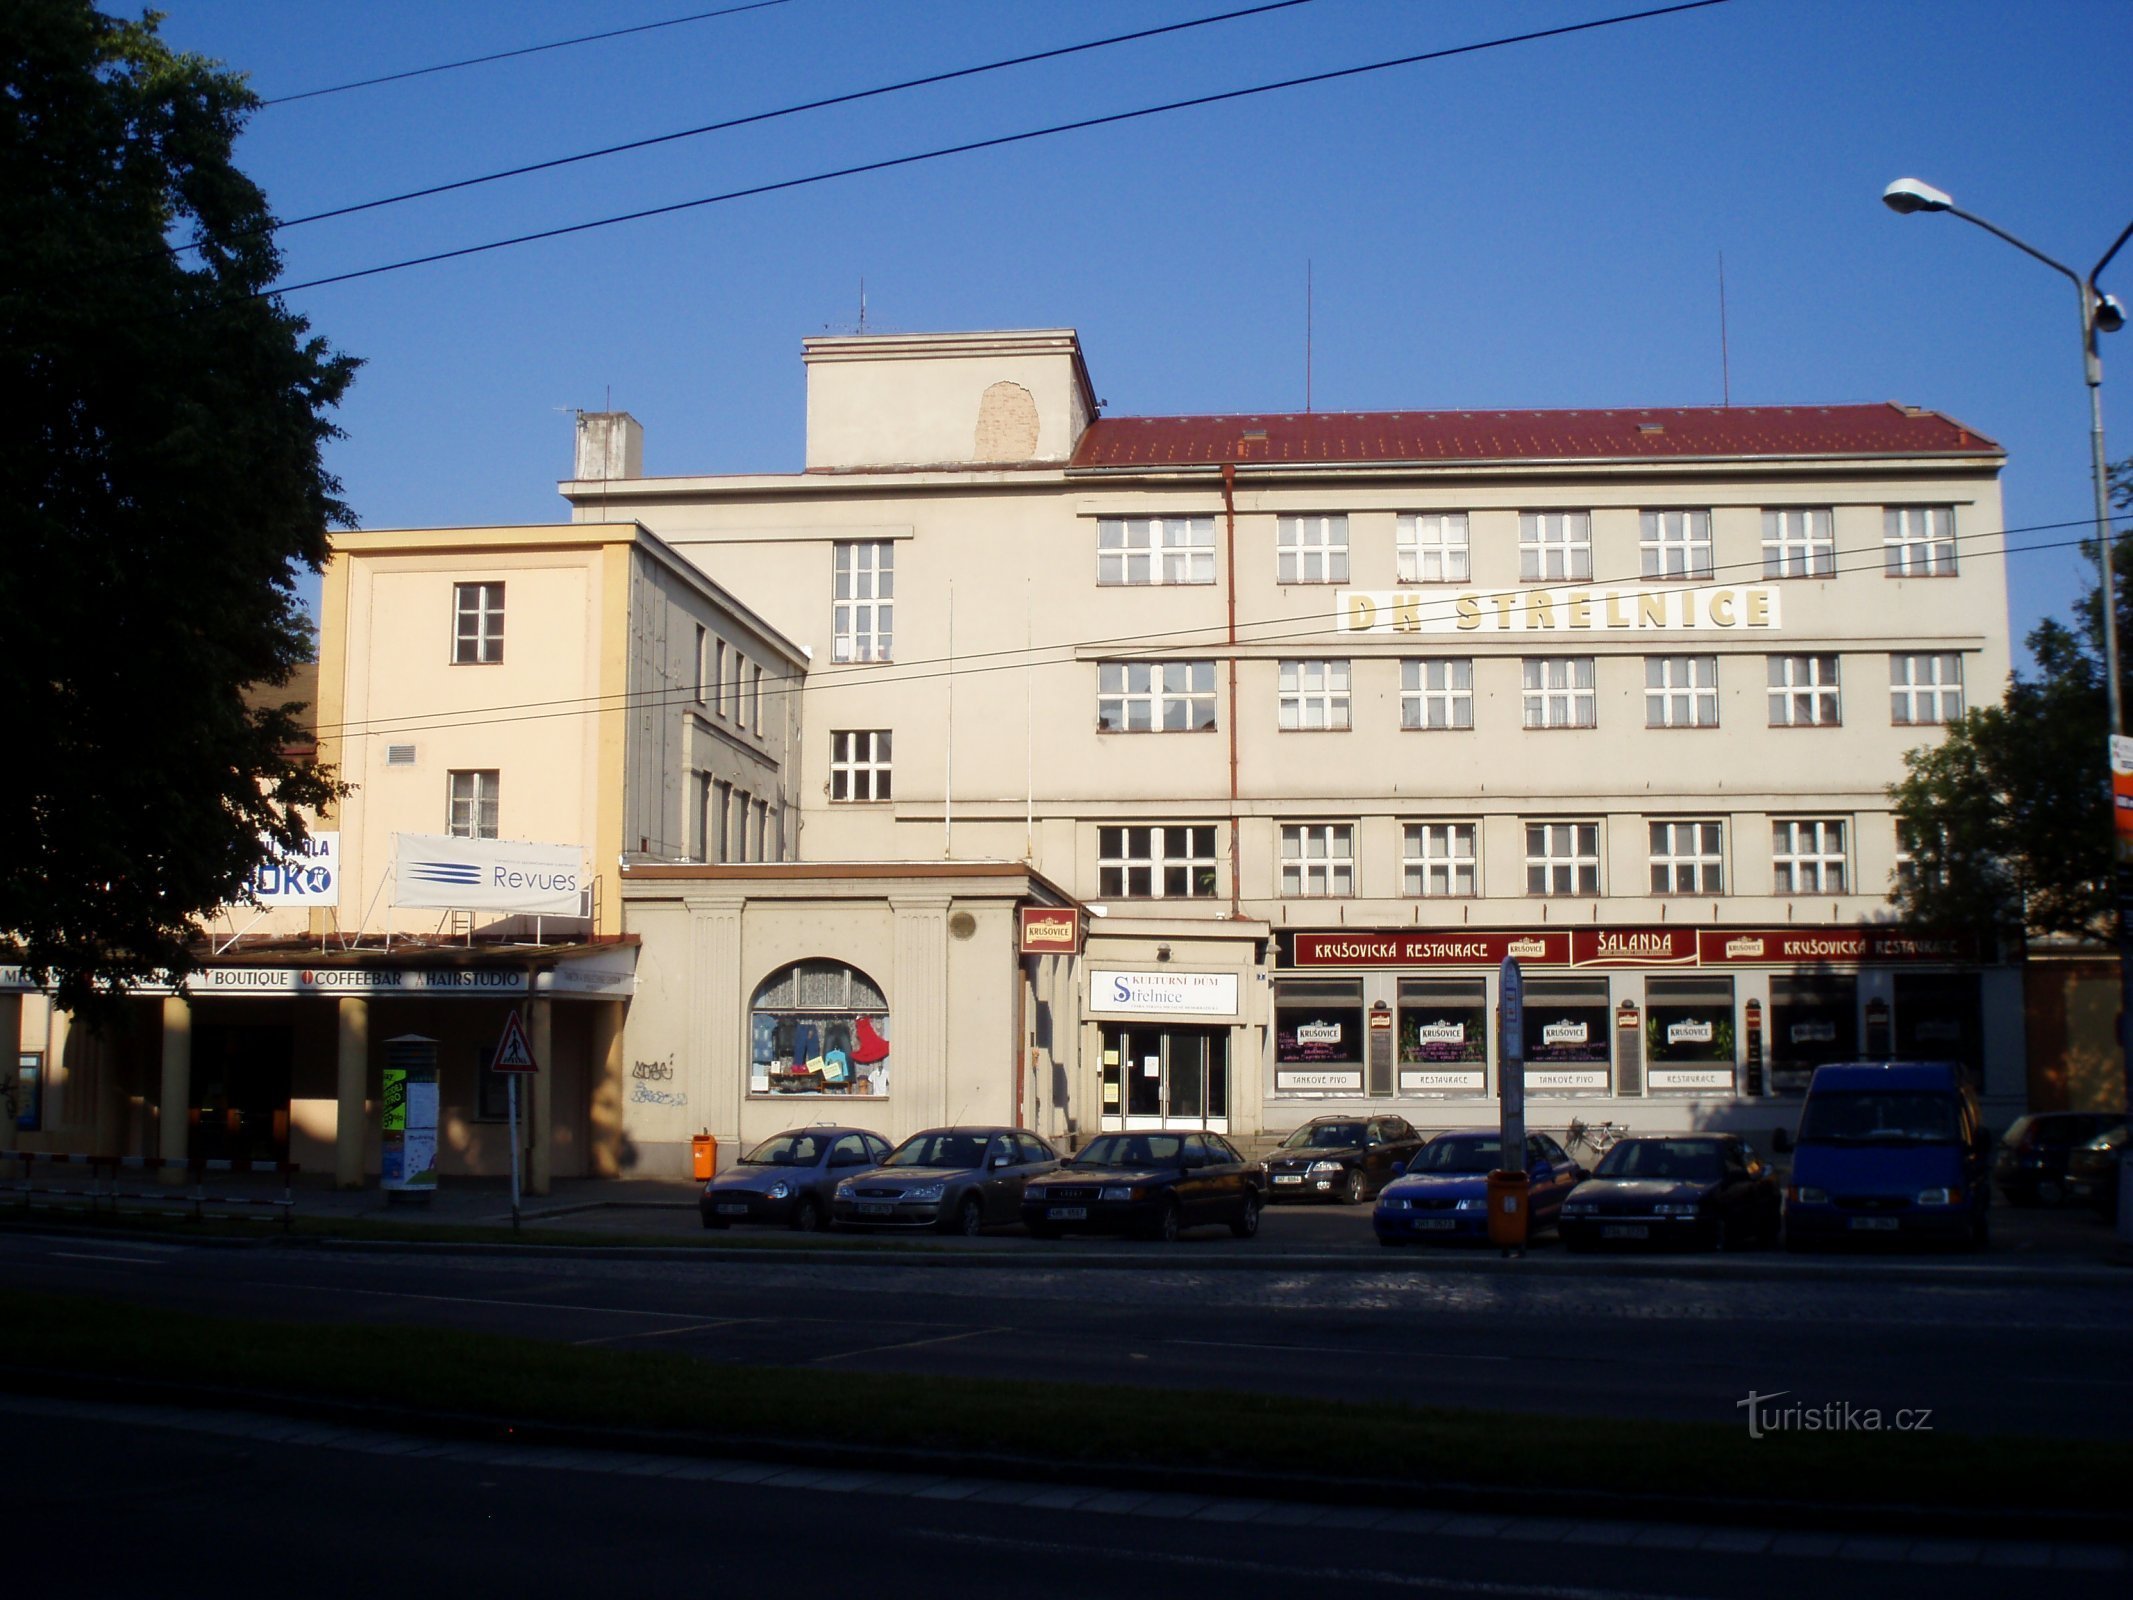 Het huidige uiterlijk van de schietbaan (Hradec Králové, 11.6.2011)